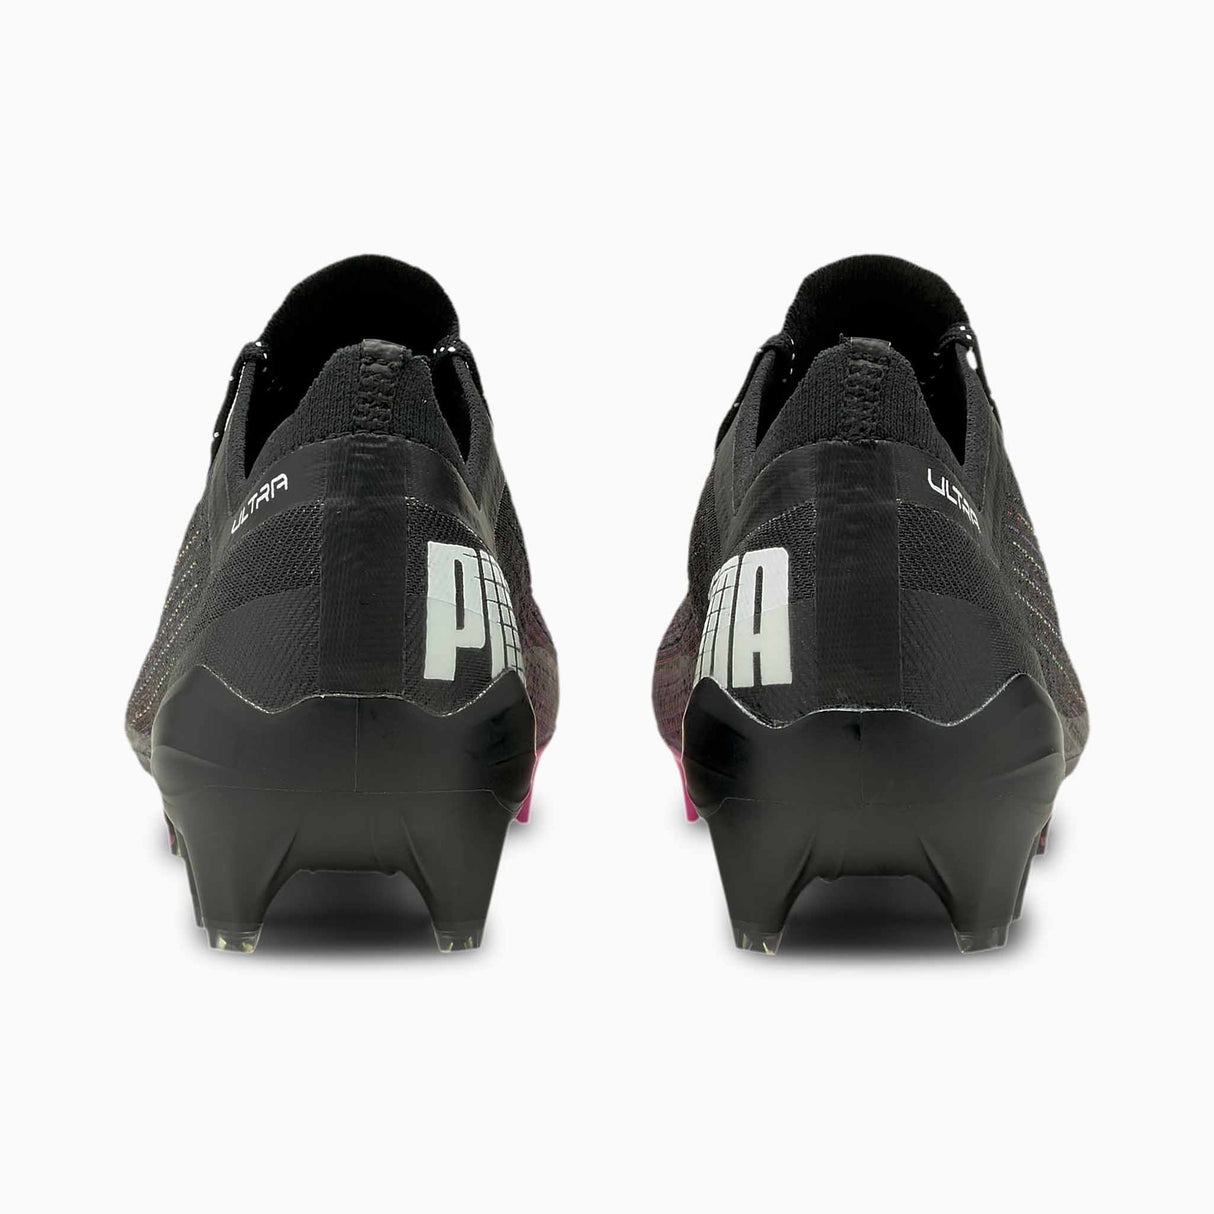 Souliers de soccer Puma Ultra 1.1 FG rose et noir dos